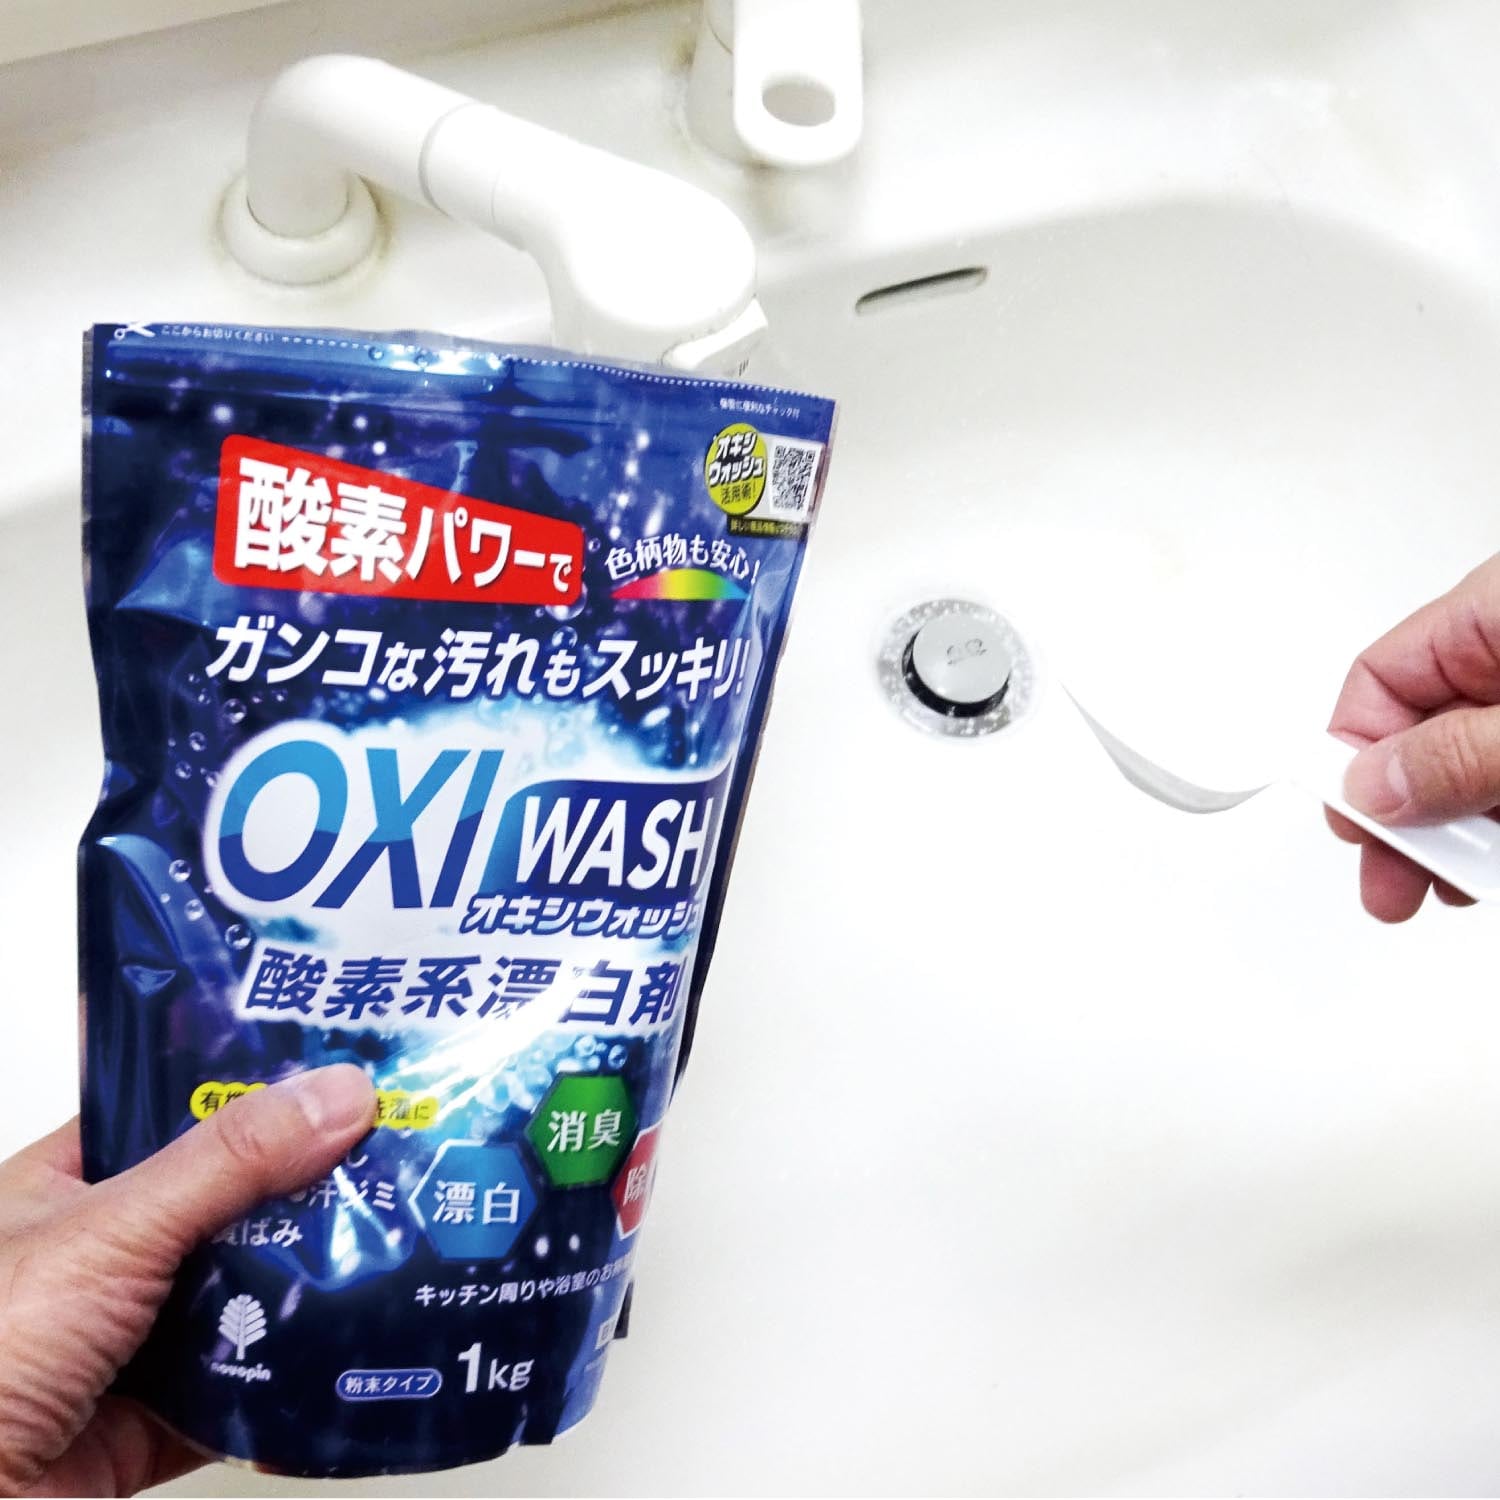 オキシウォッシュ 酸素系漂白剤 680G ボトル - 洗濯用洗剤